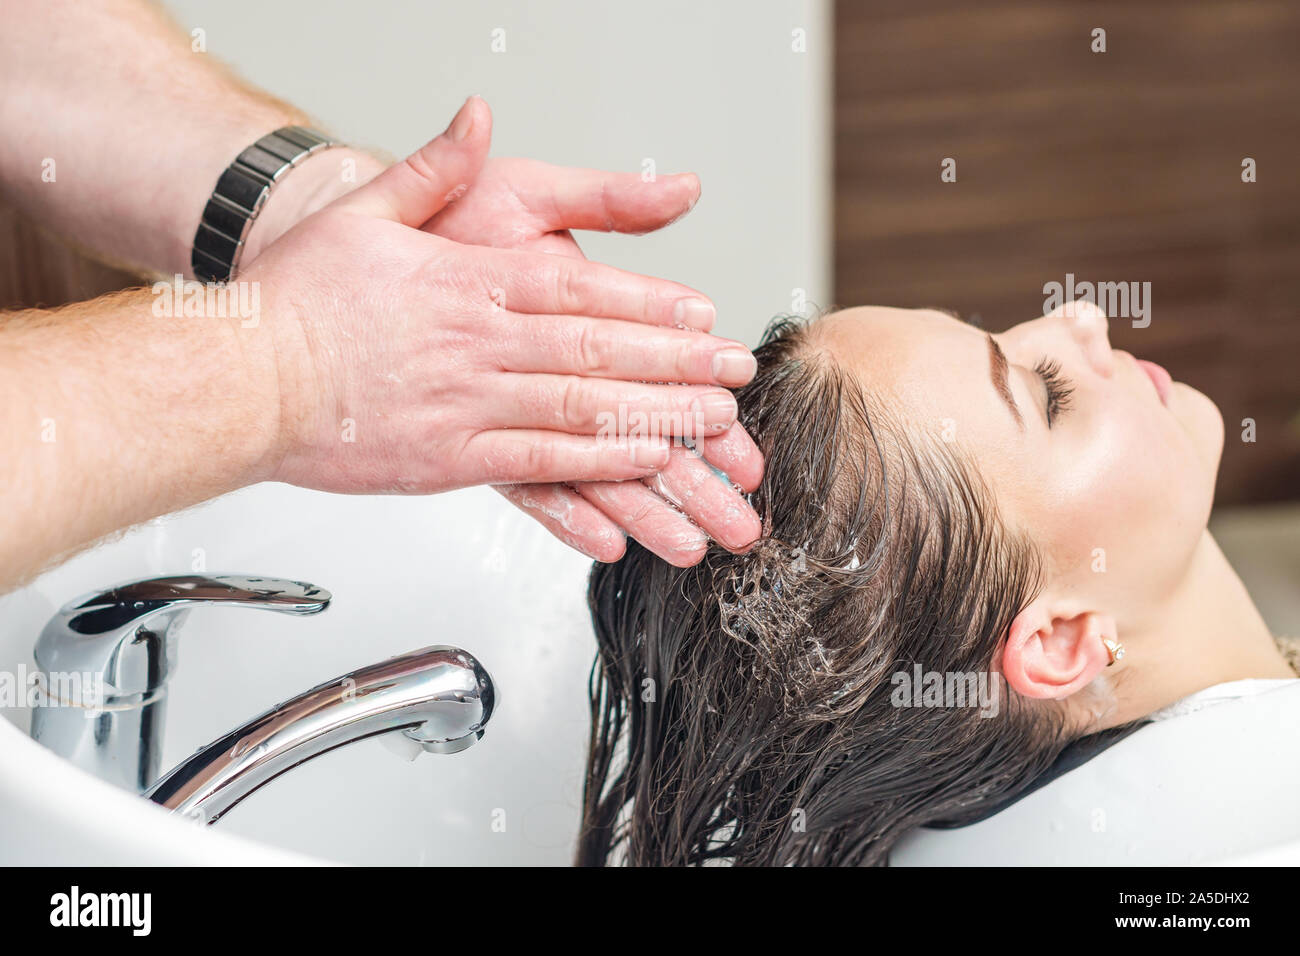 Professionelle Friseur ist das Waschen der Haare im Waschbecken vor dem  Schneiden an Barbershop. Friseur Salon, weiblichen stylist Konzept  Stockfotografie - Alamy